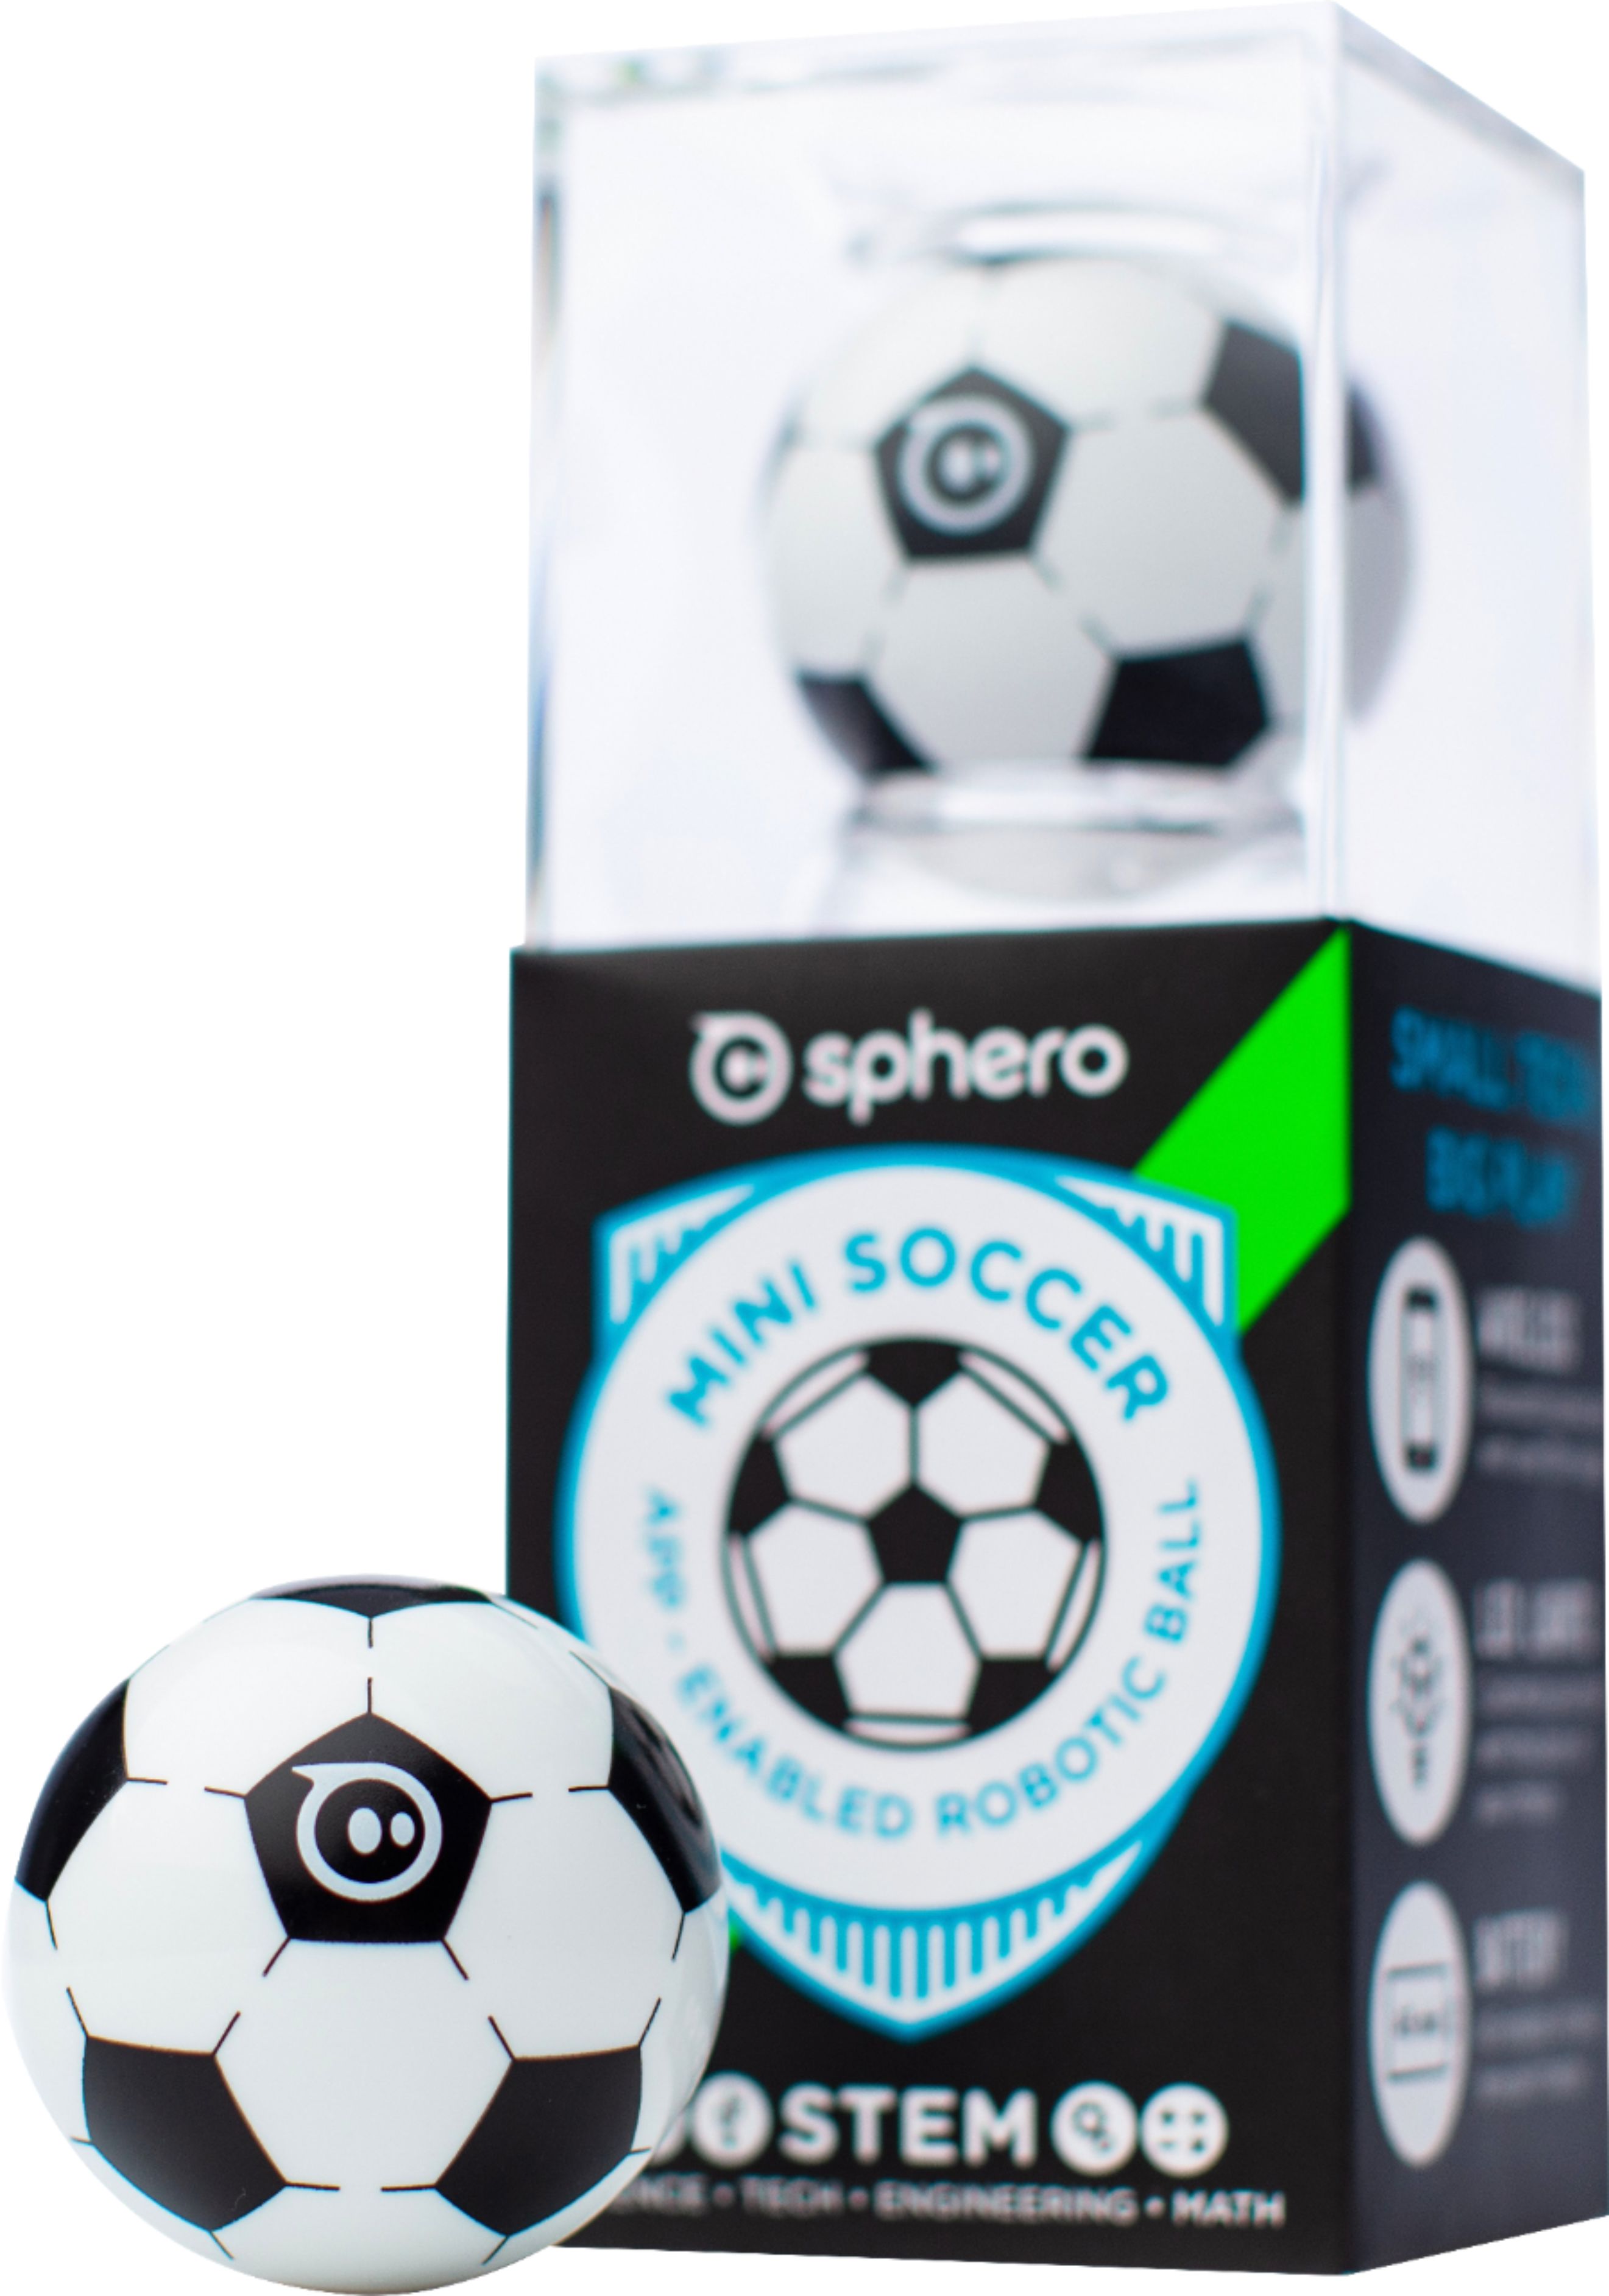 Sphero - Mini Soccer App-Enabled Robotic Ball - Black And White